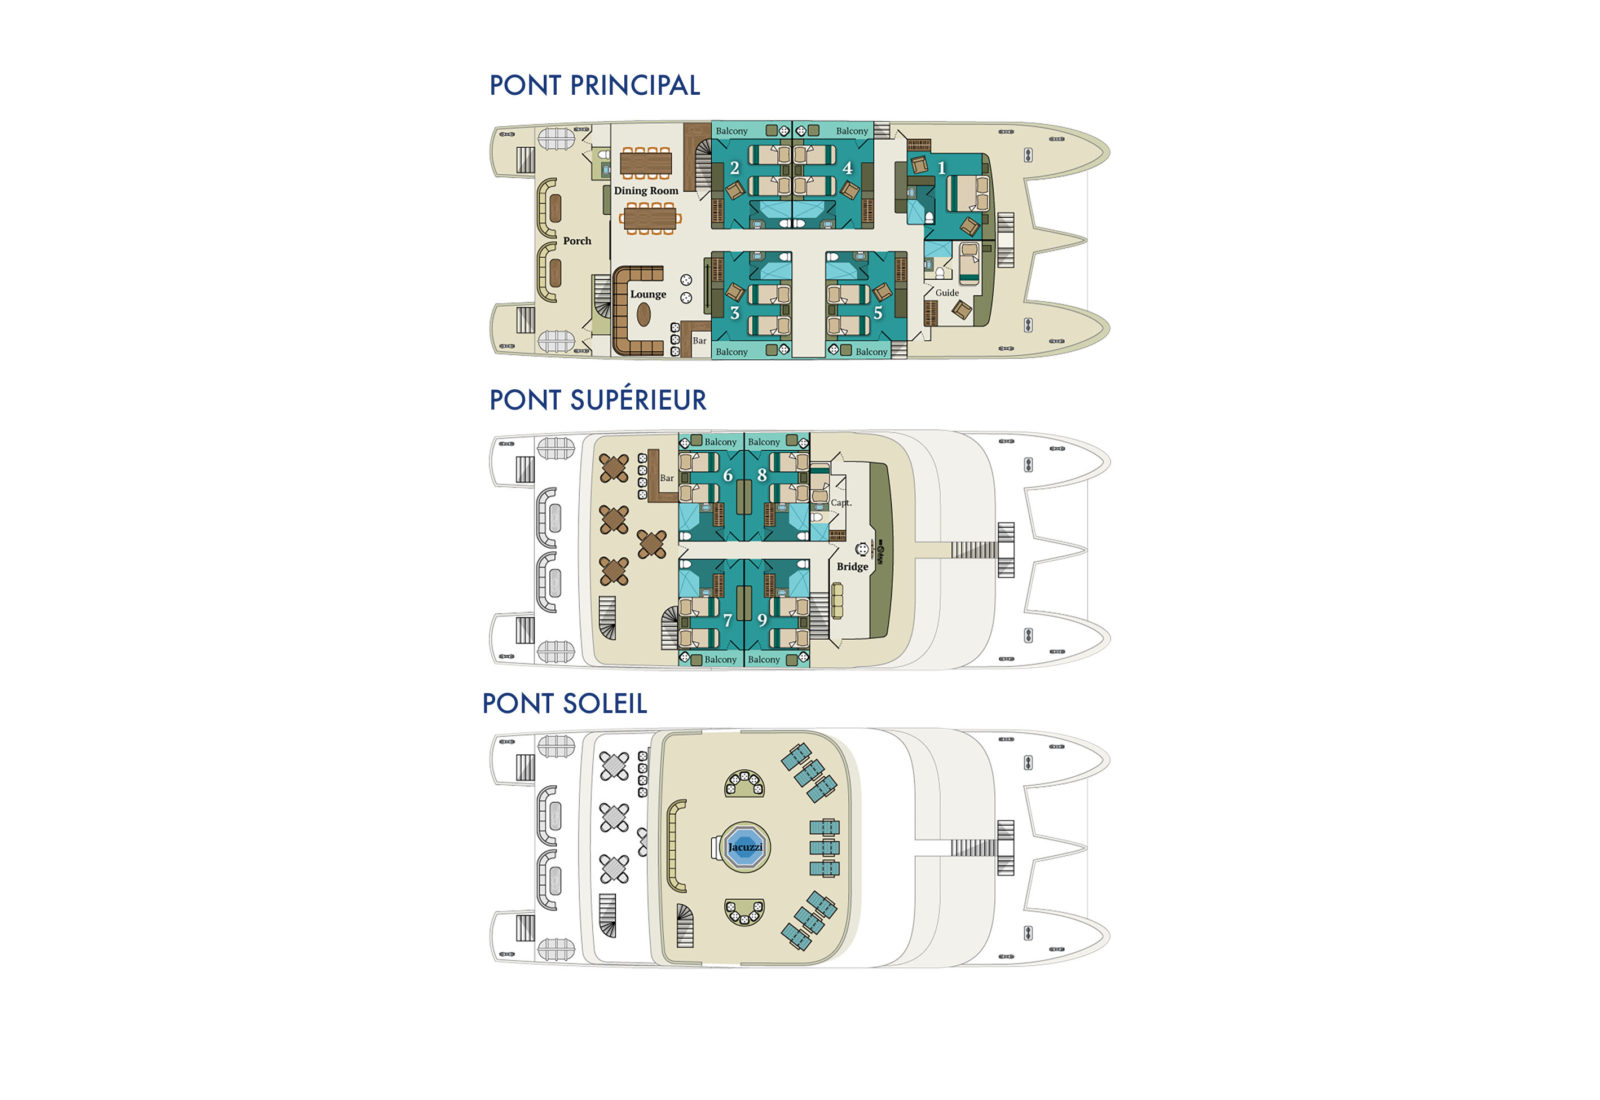 Plan des ponts et des cabines du navire